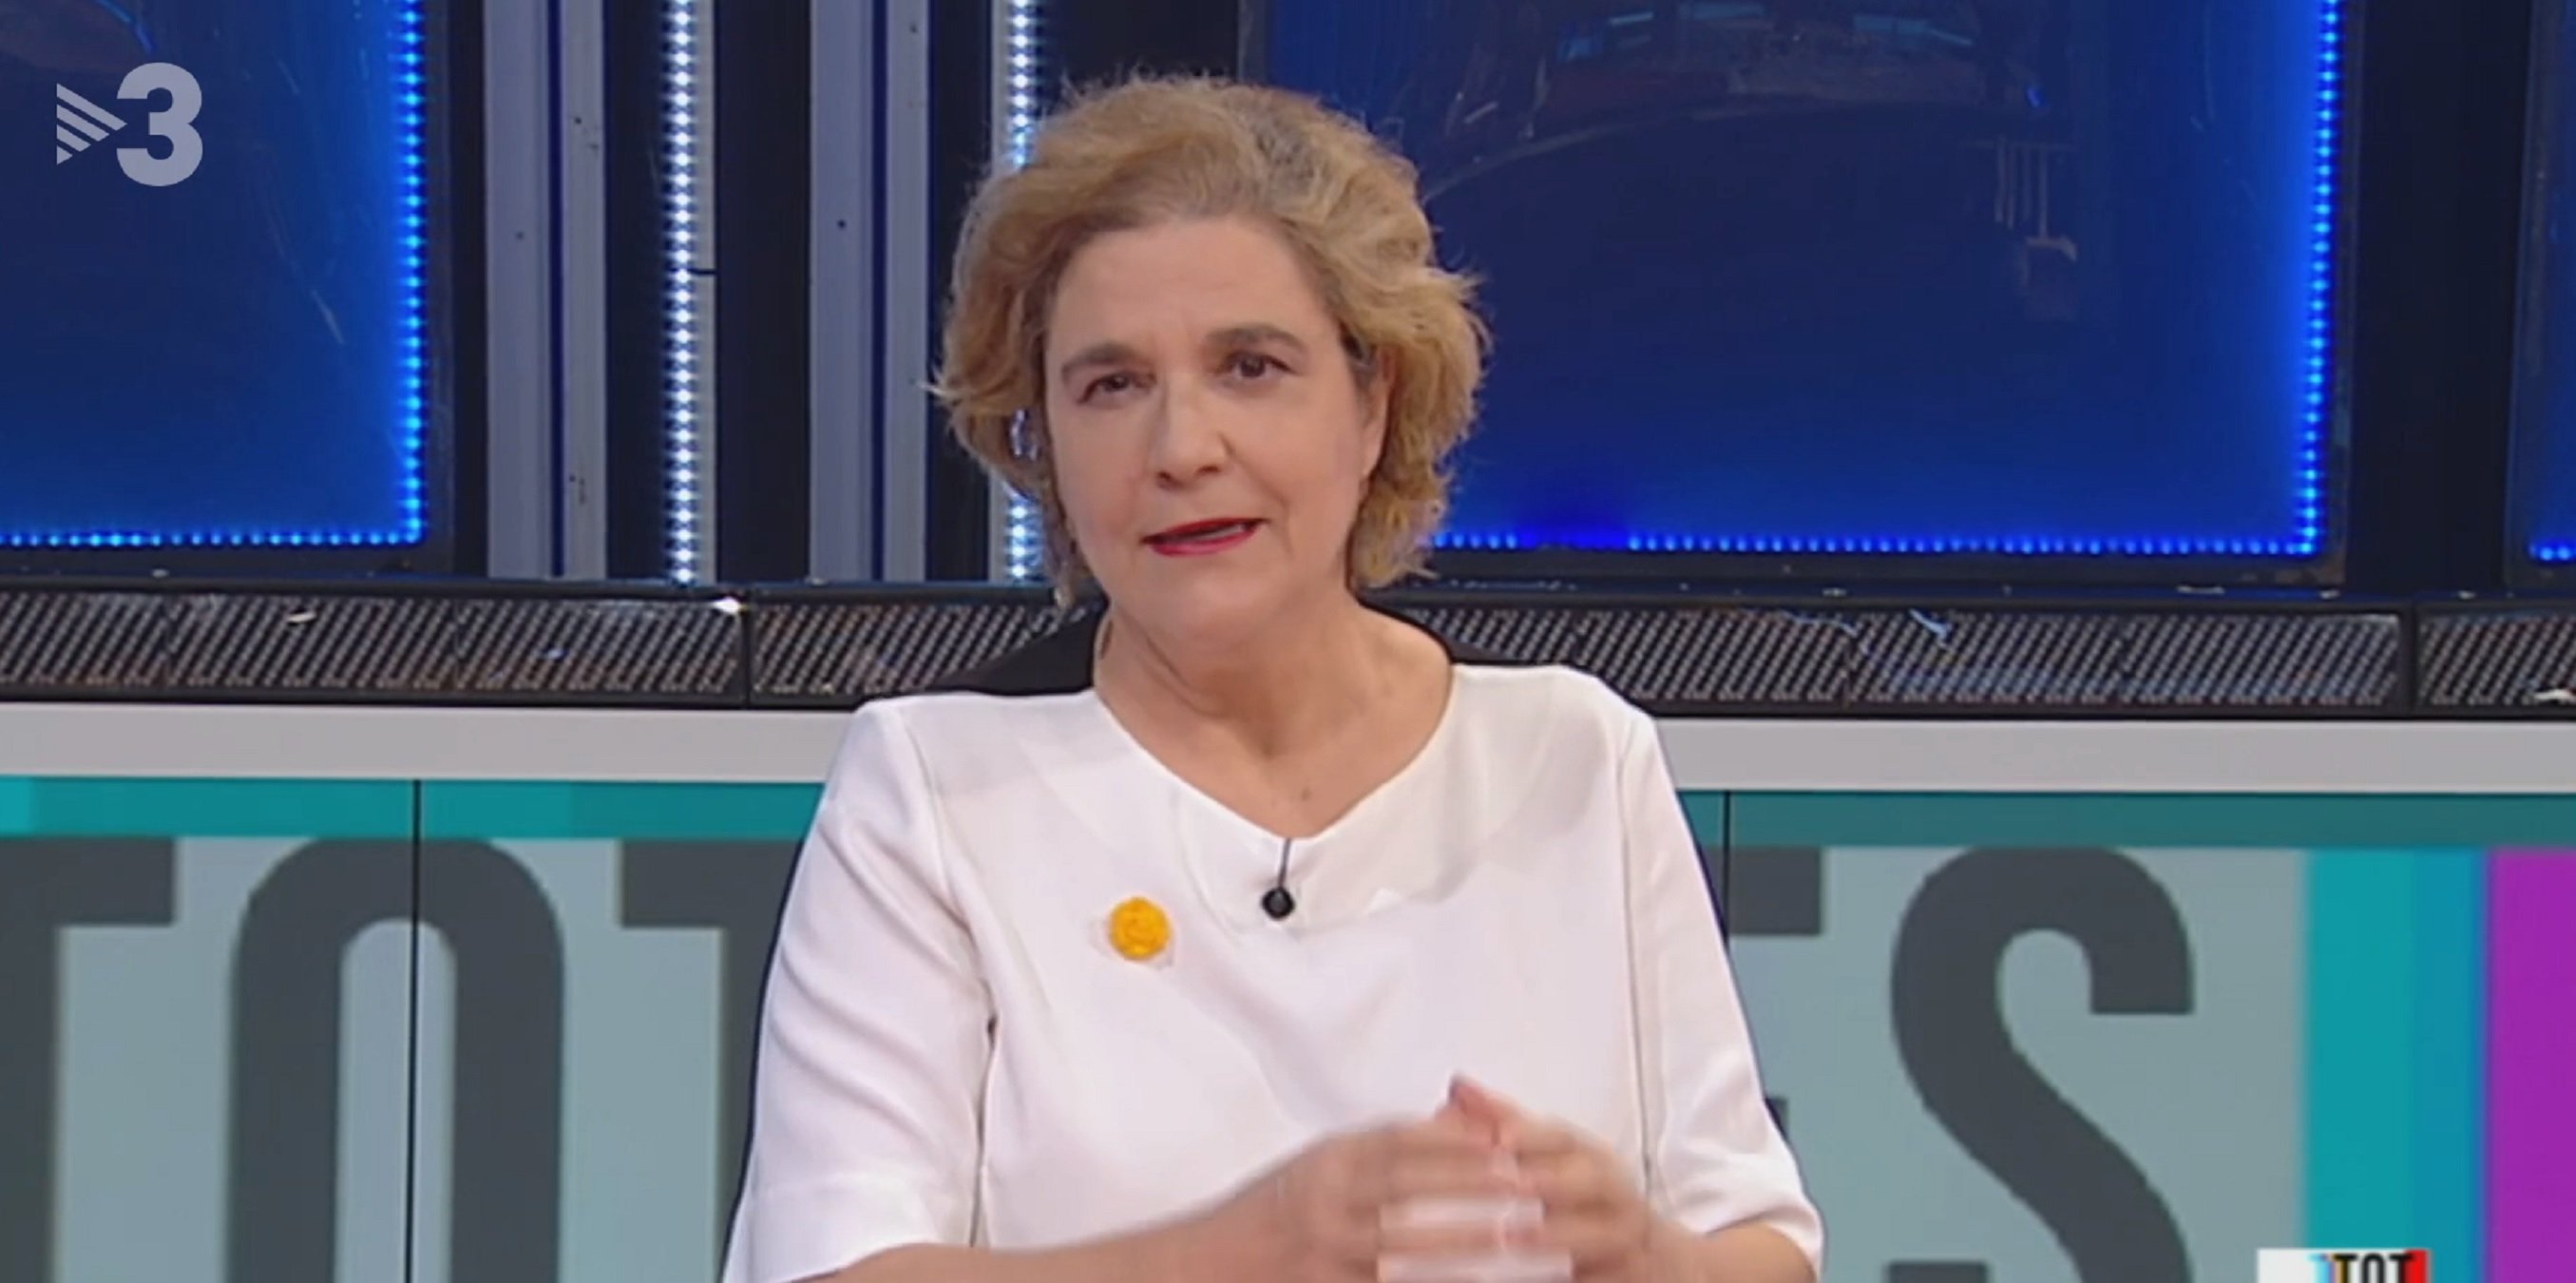 Desastre en TV3: la razón por la que ponen a Pilar Rahola a las 4 de la tarde